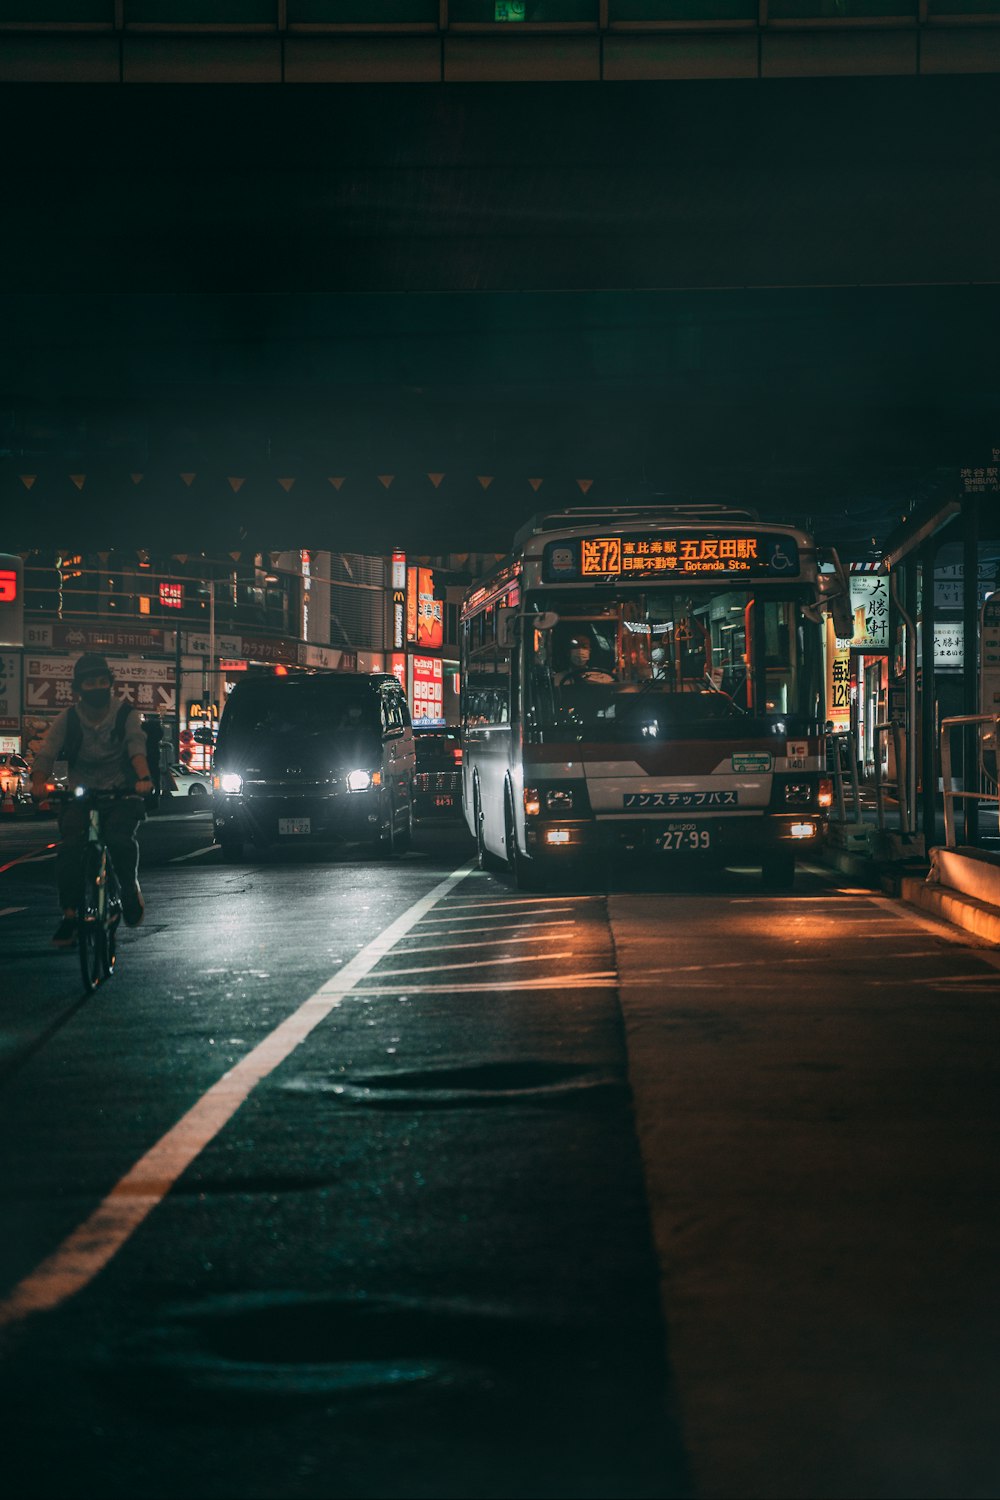 autobus rosso a due piani su strada durante la notte